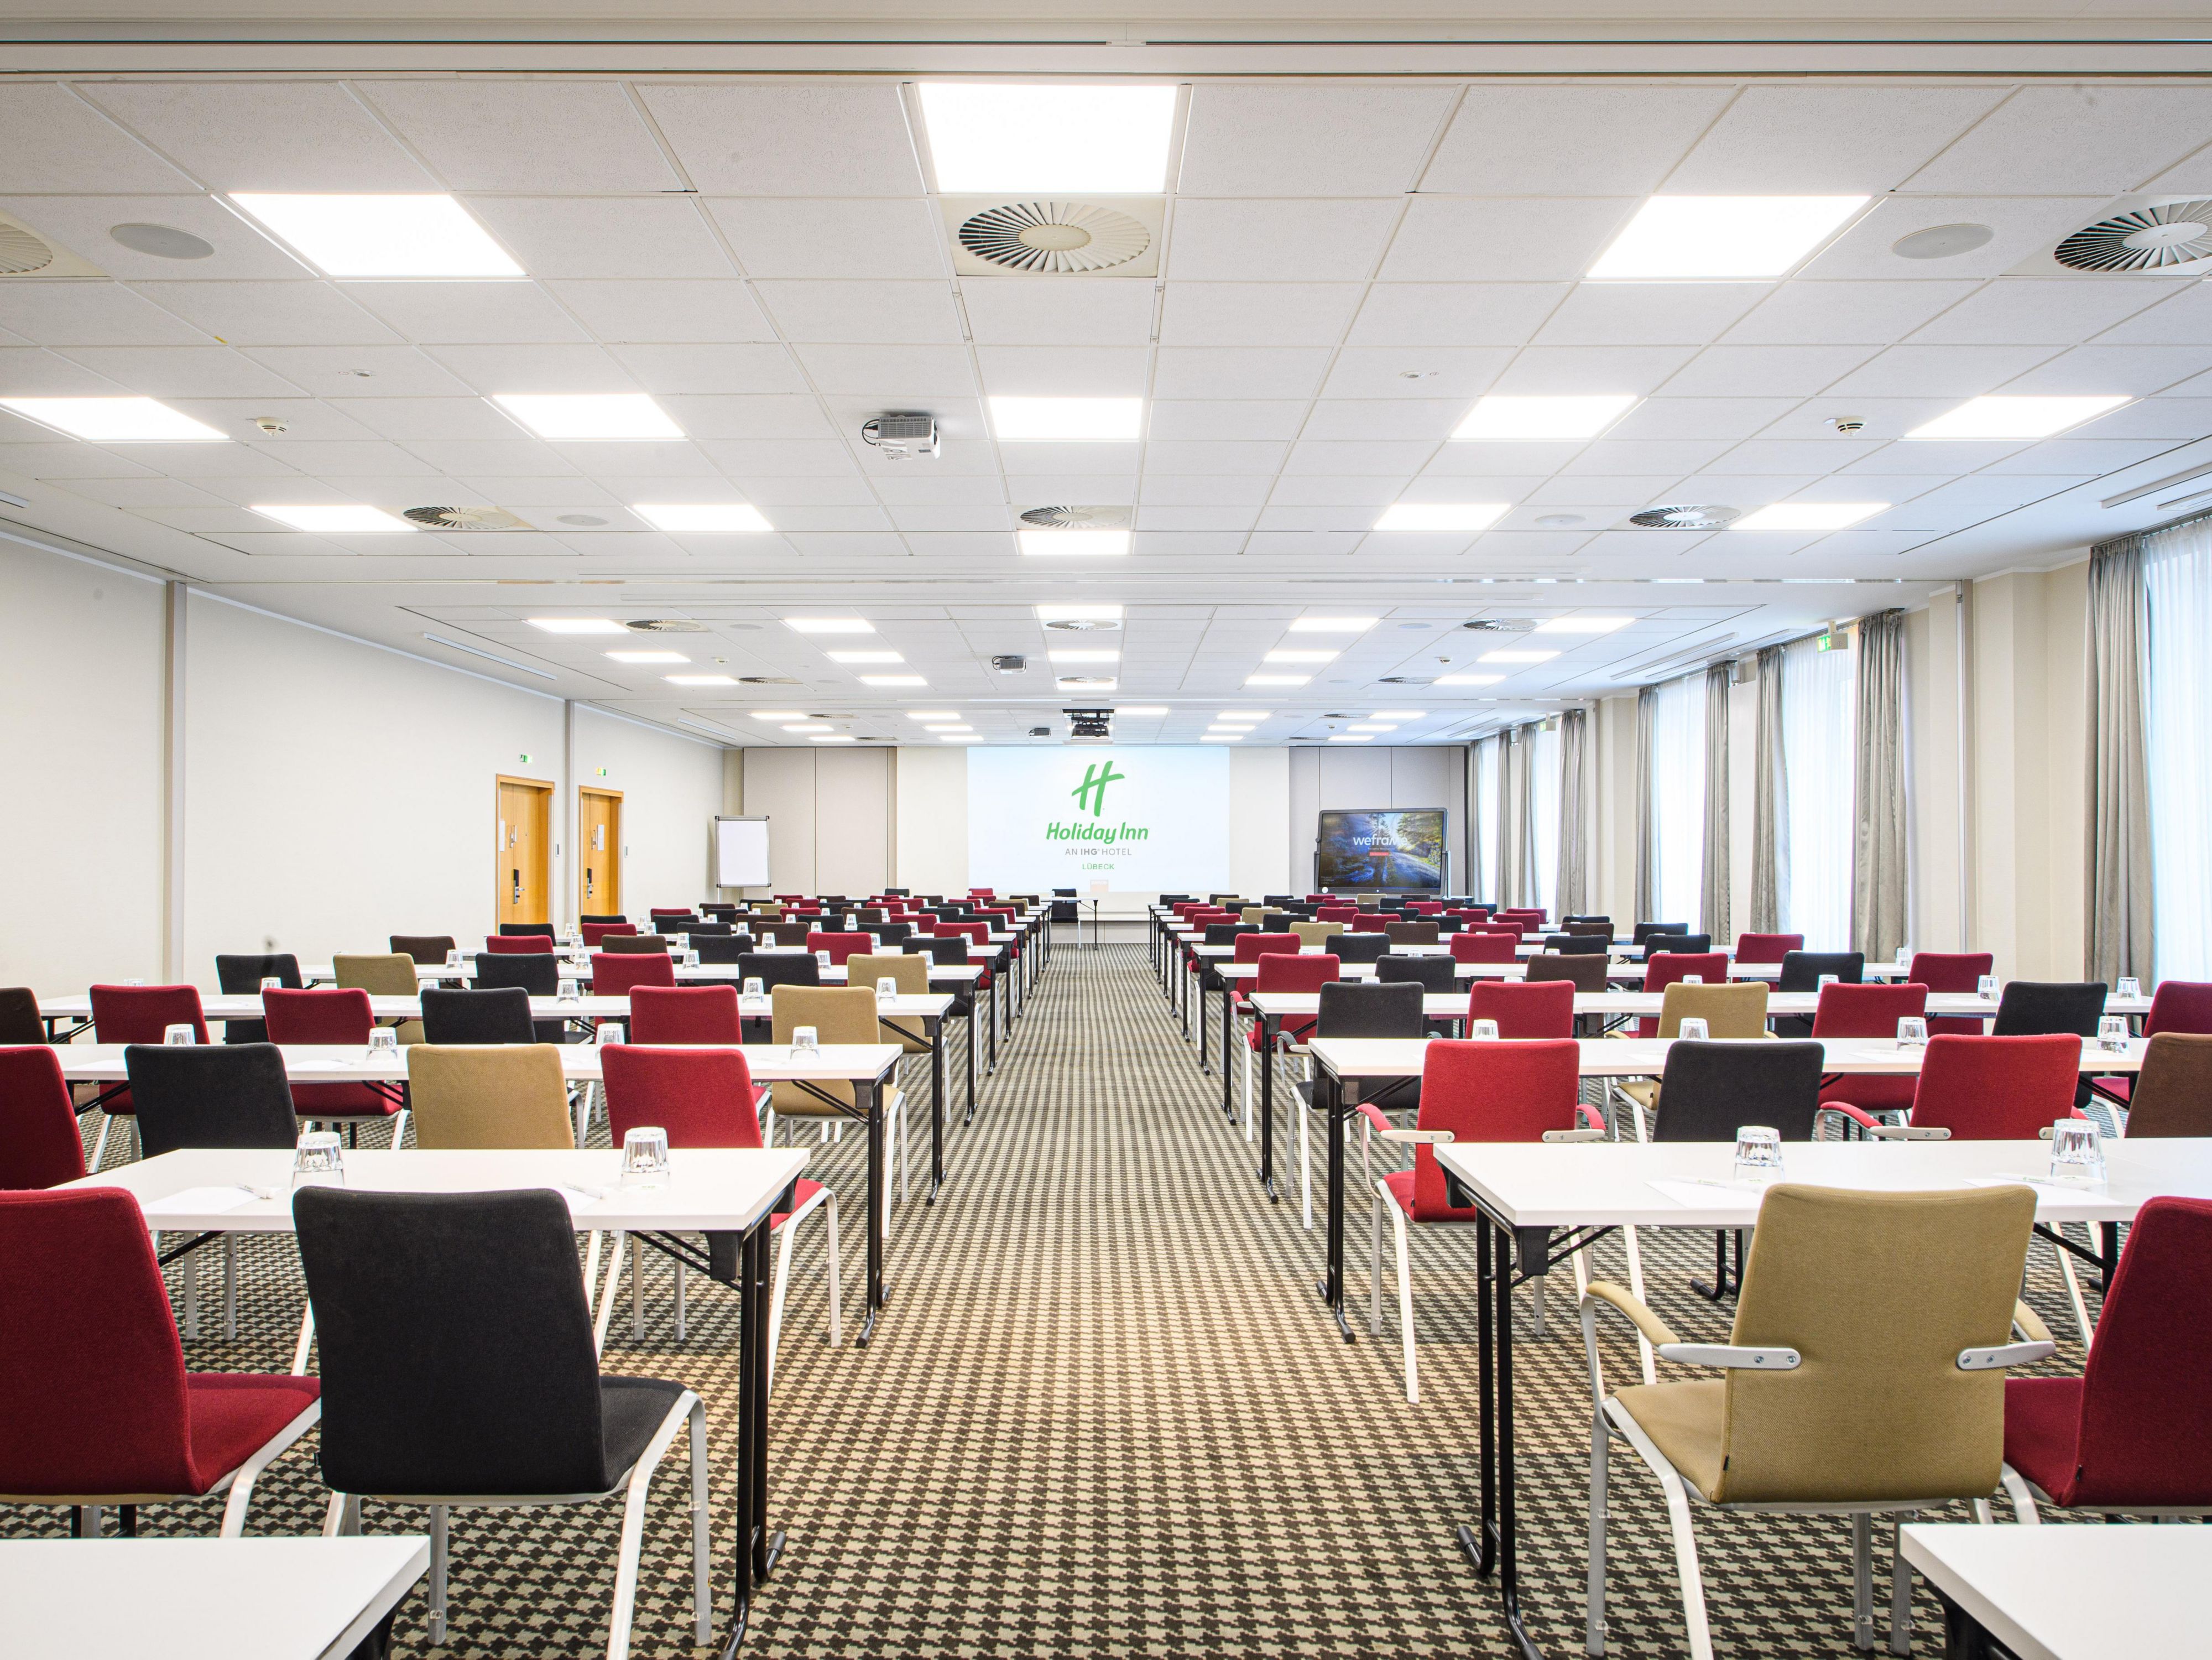 Erfolgreich Tagen, stilvoll feiern! Das Holiday Inn® Lübeck bietet 10 flexible Tagungsräume für bis zu 350 Personen an. Alle Tagungsräume befinden sich im Erdgeschoss, sind barrierefrei und verfügen über Tageslicht, Klimaanlage und moderne Tagungstechnik.